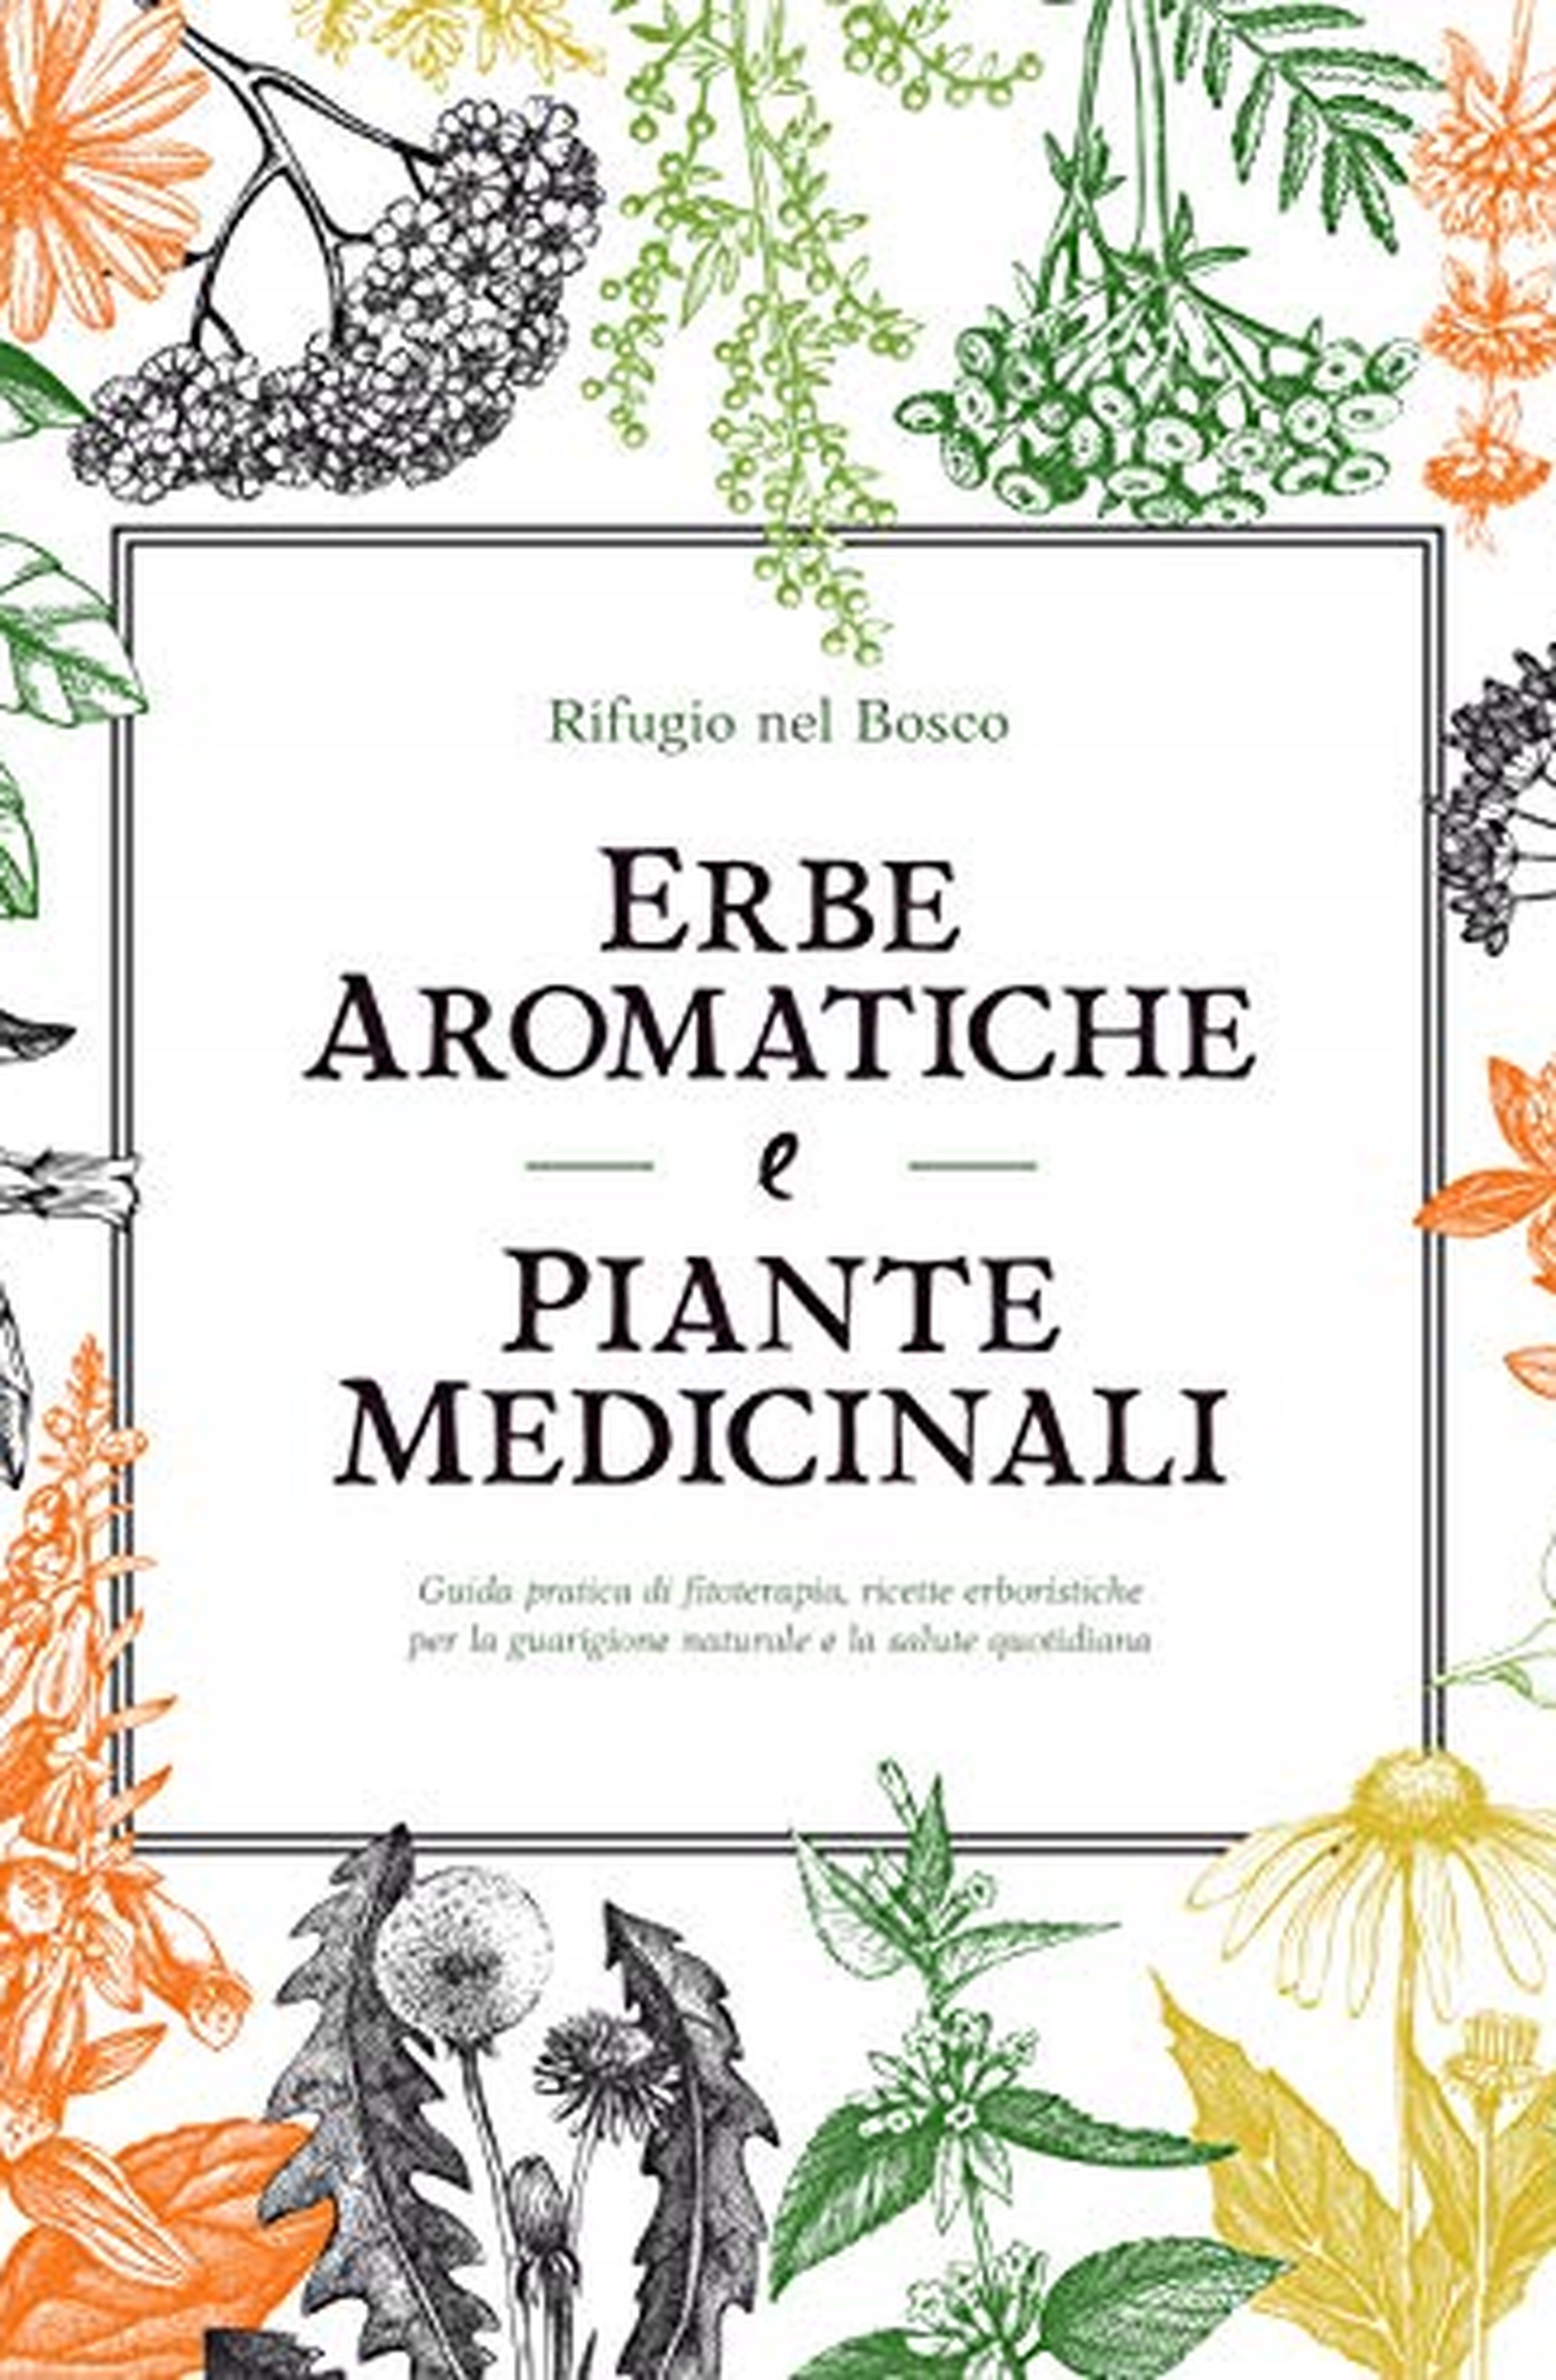 Erbe aromatiche e piante medicinali: Guida pratica di fitoterapia, ricette erboristiche per la guarigione naturale e la salute quotidiana